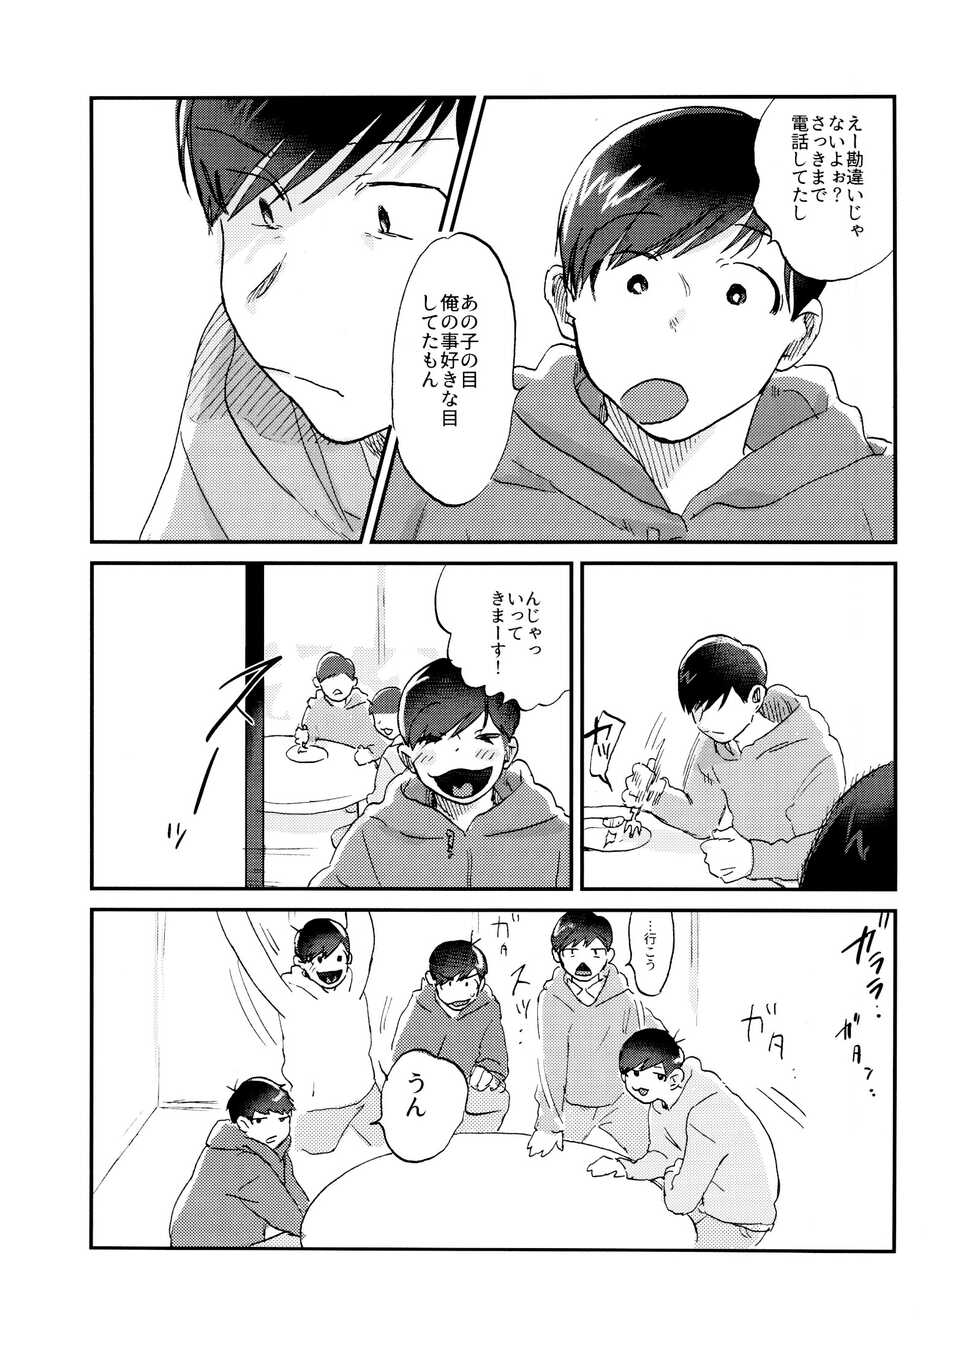 Seishuuspe (Seishu)] X'mas (Osomatsu-san) - Page 12